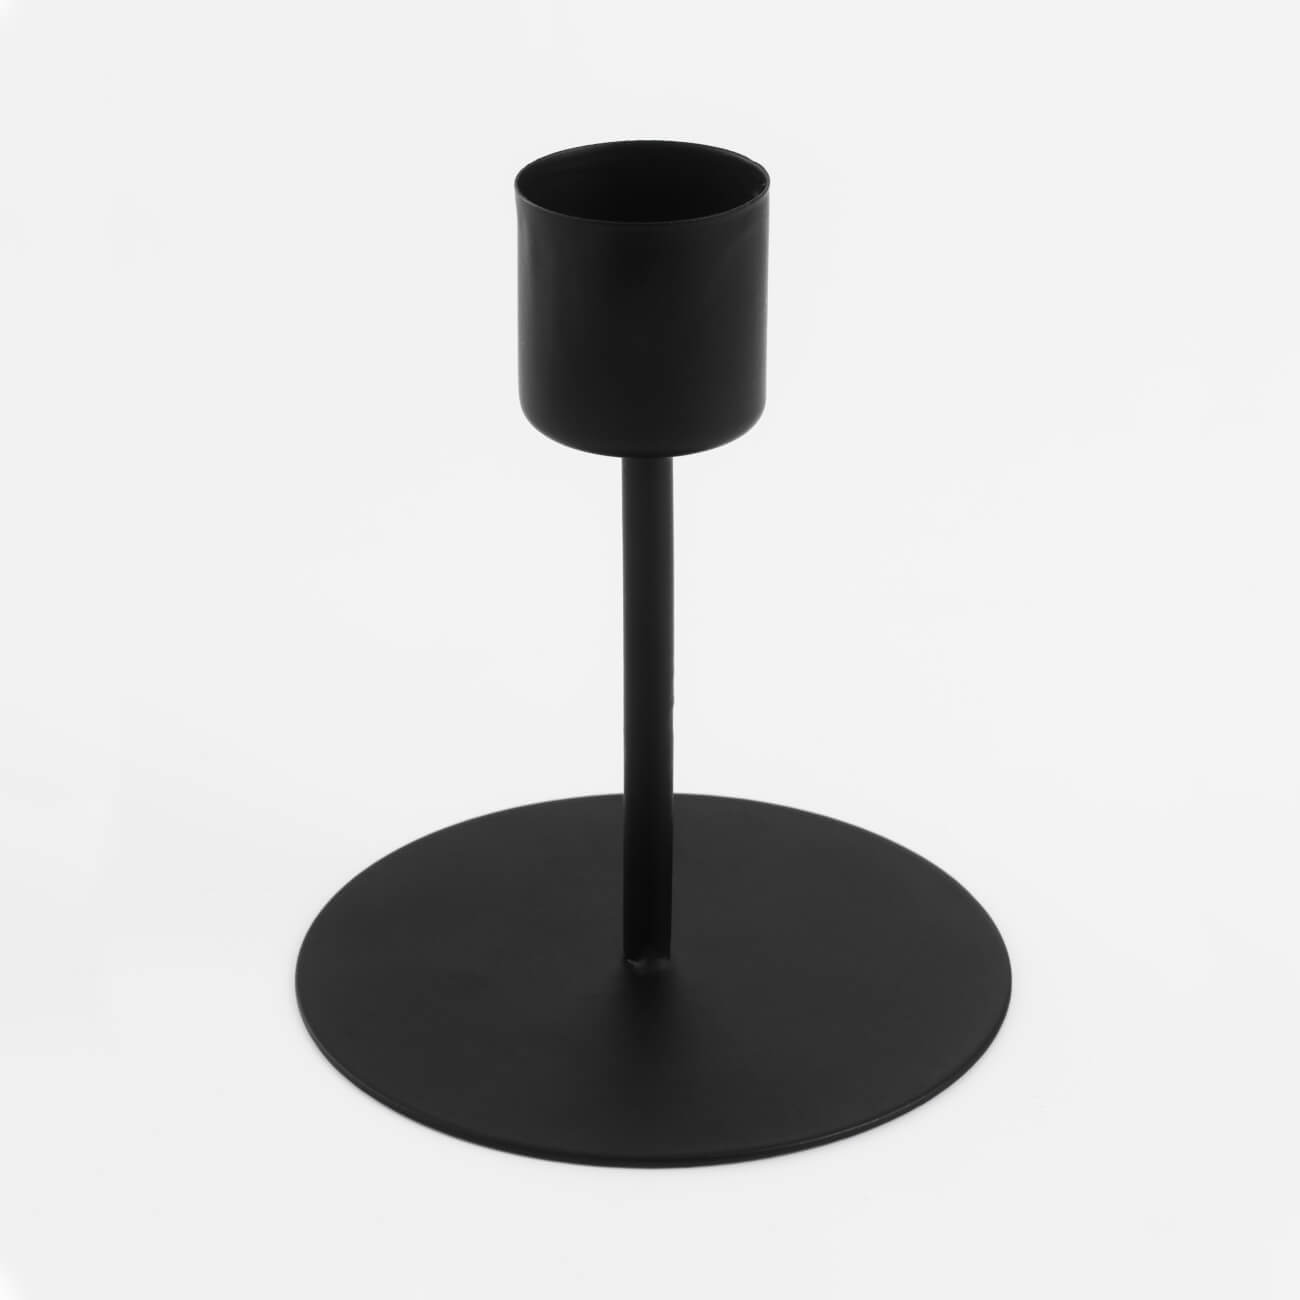 Подсвечник, 10 см, для тонкой свечи, на ножке, металл, черный, Black style подсвечник для 1 свечи баланс металл